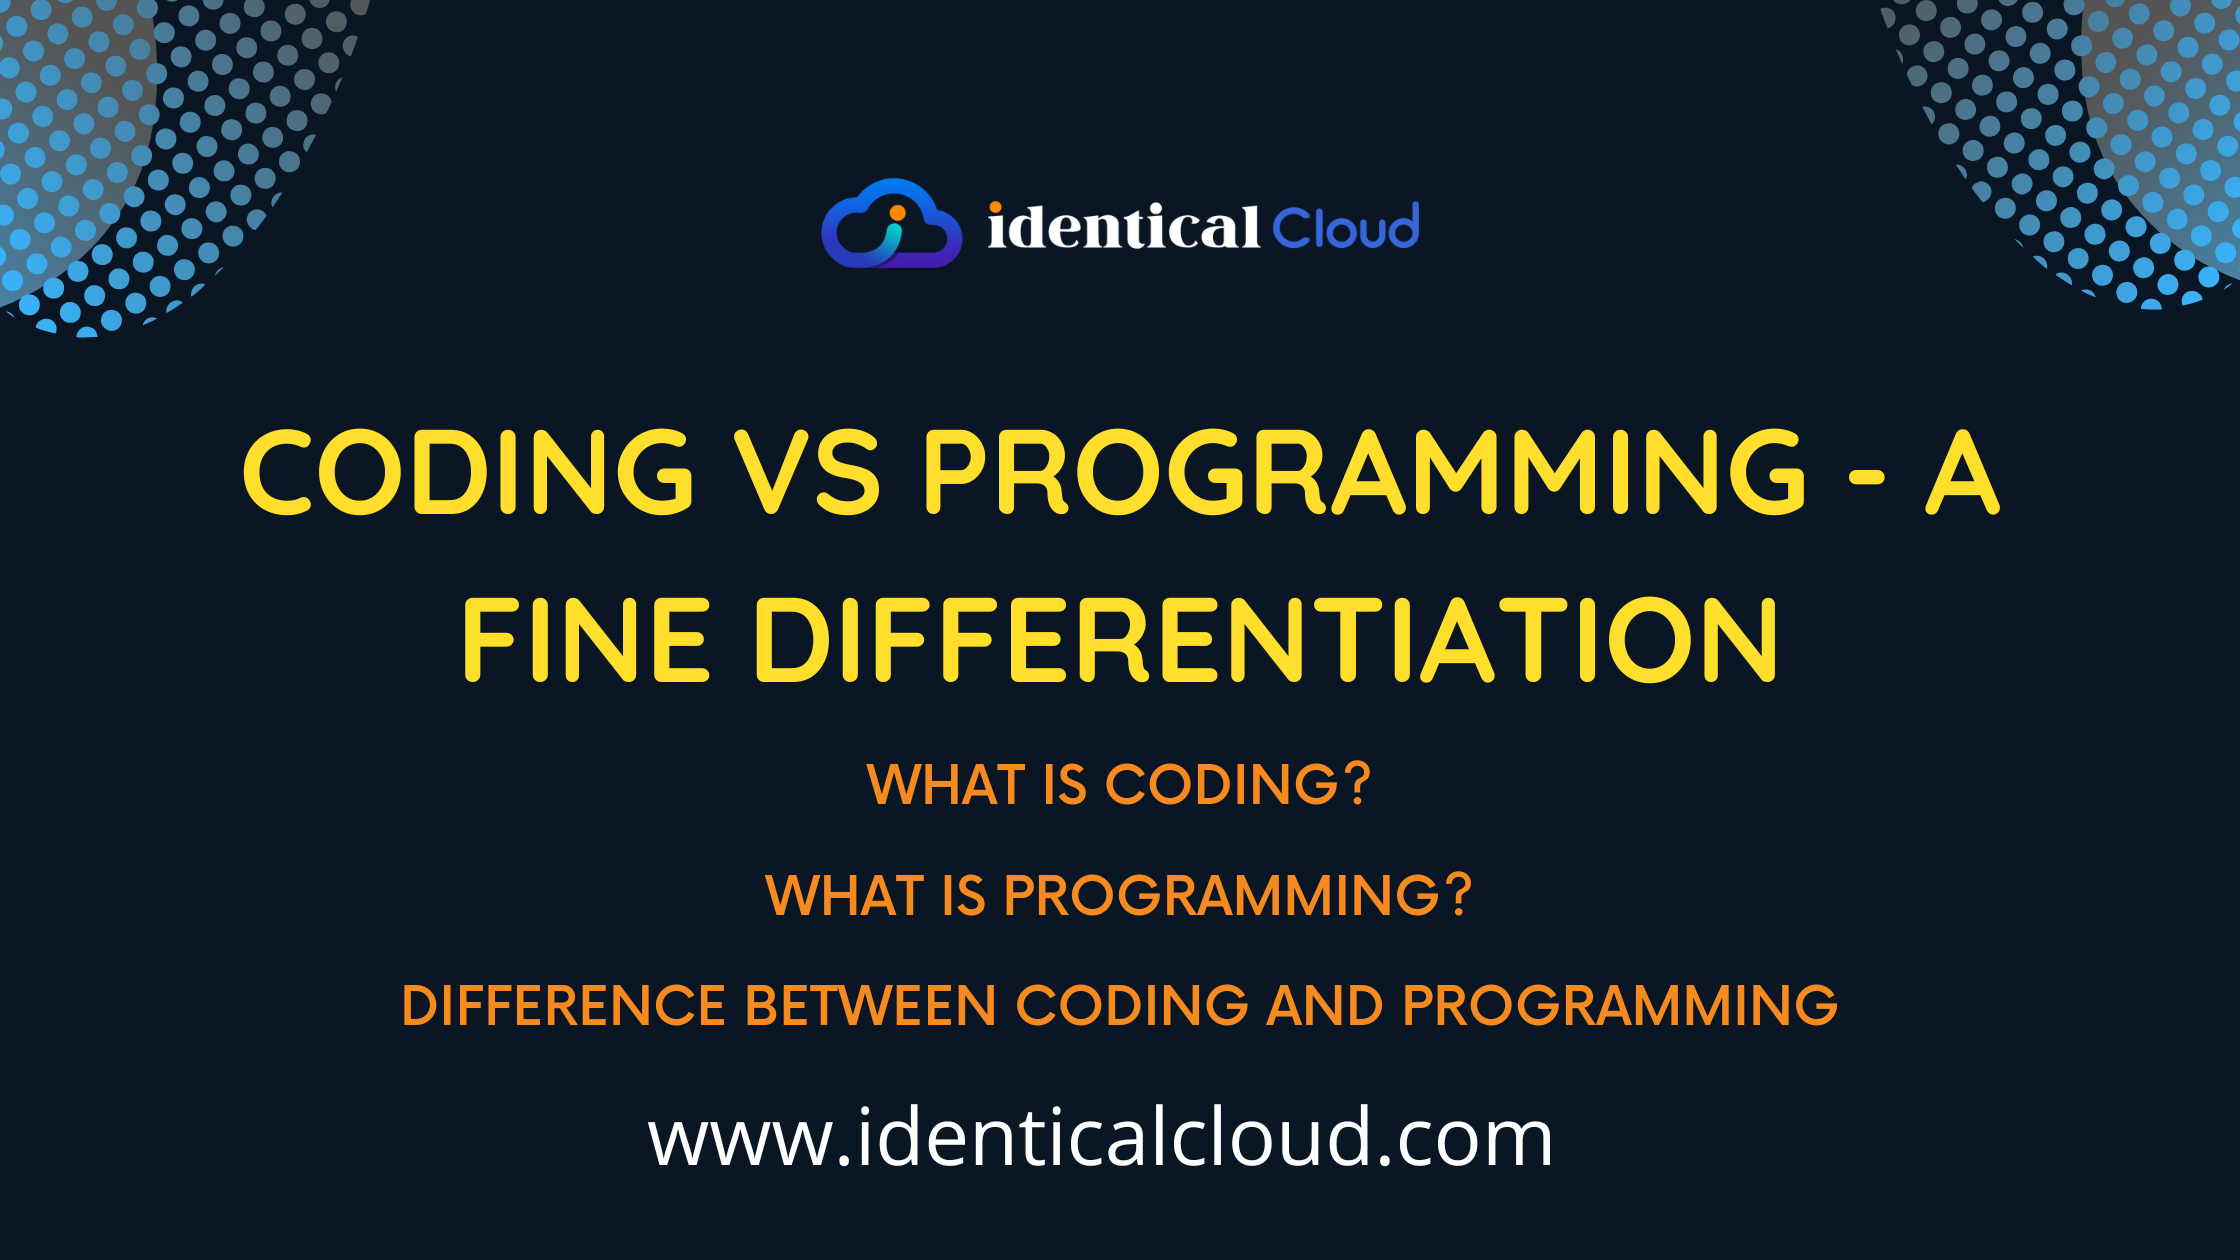 Coding vs Programming - A fine differentiation